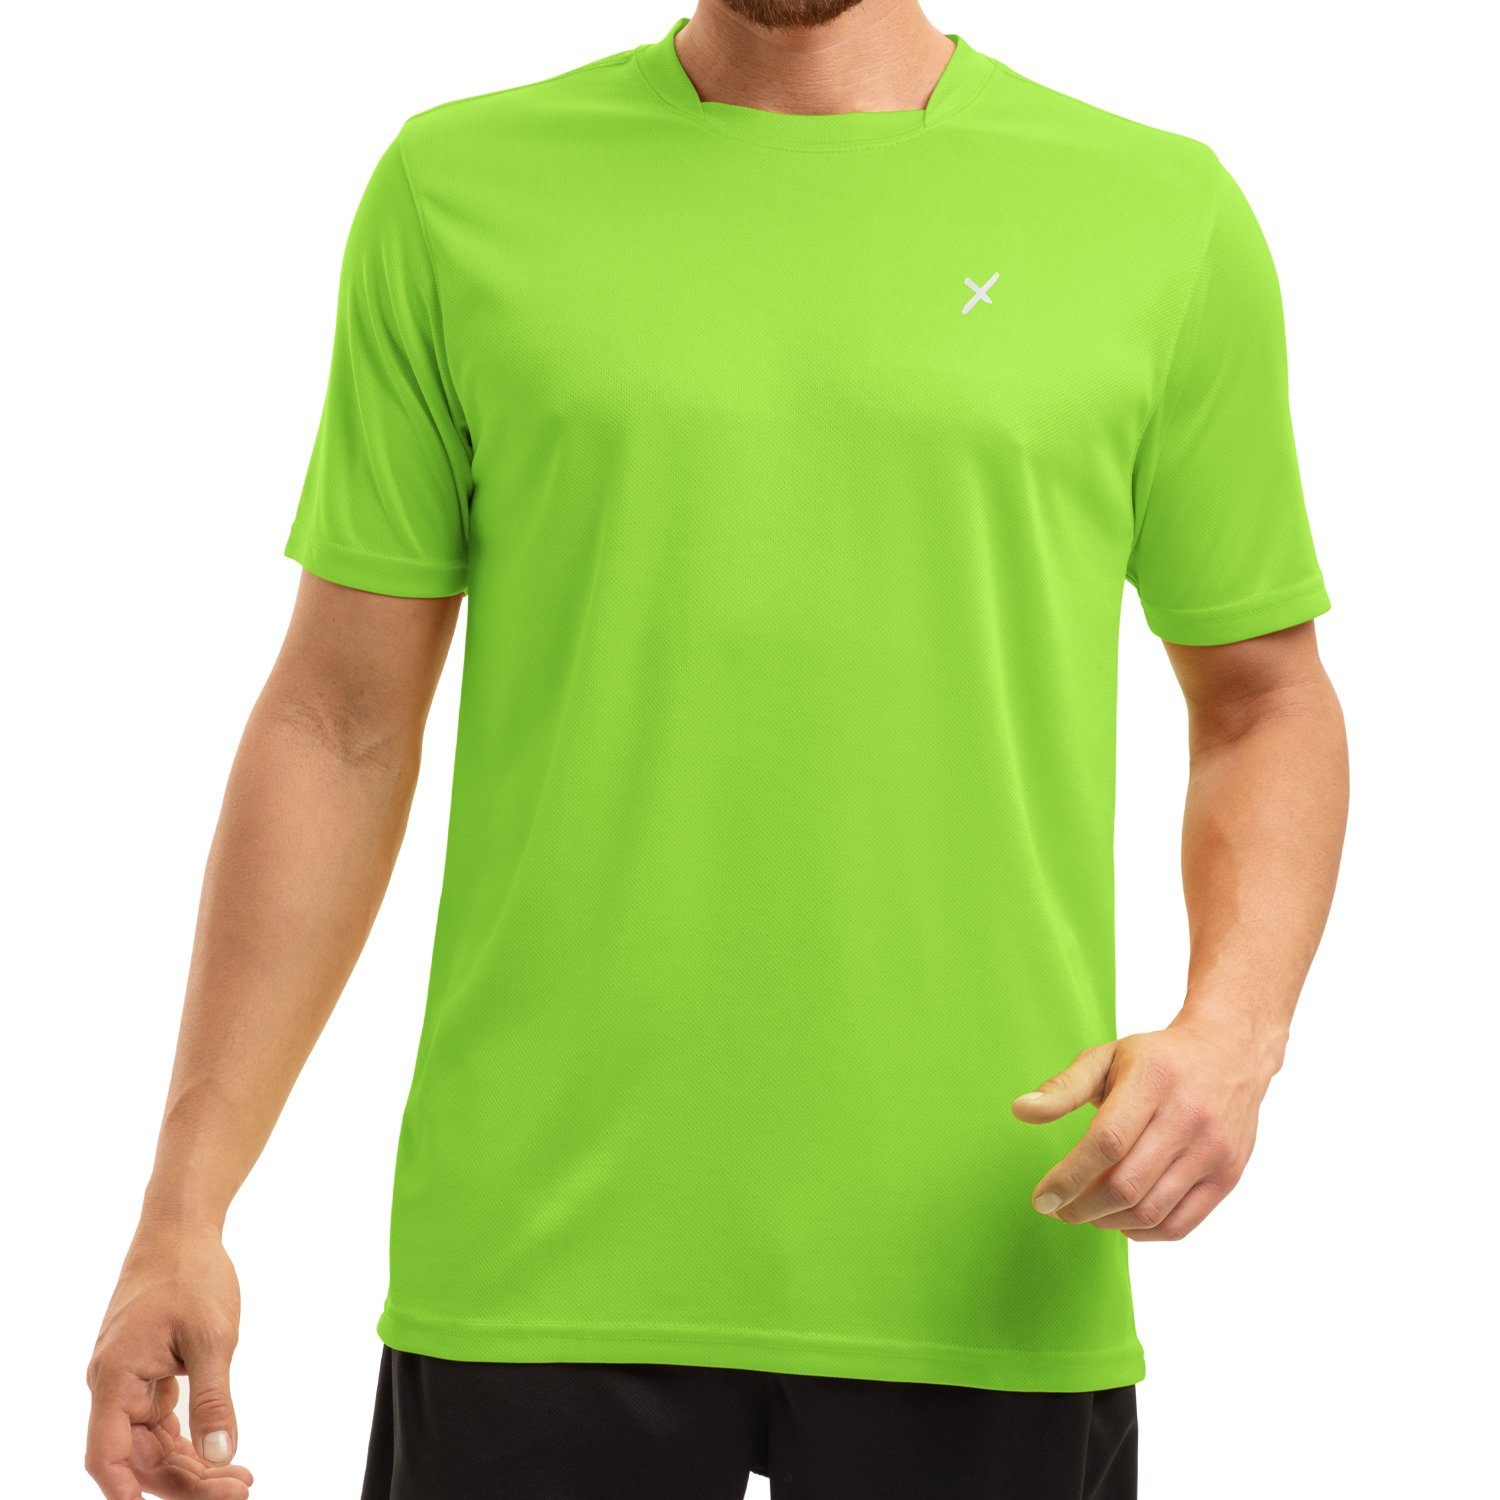 CFLEX Trainingsshirt Herren Sport Shirt Fitness T-Shirt piqué Sportswear Collection Grün